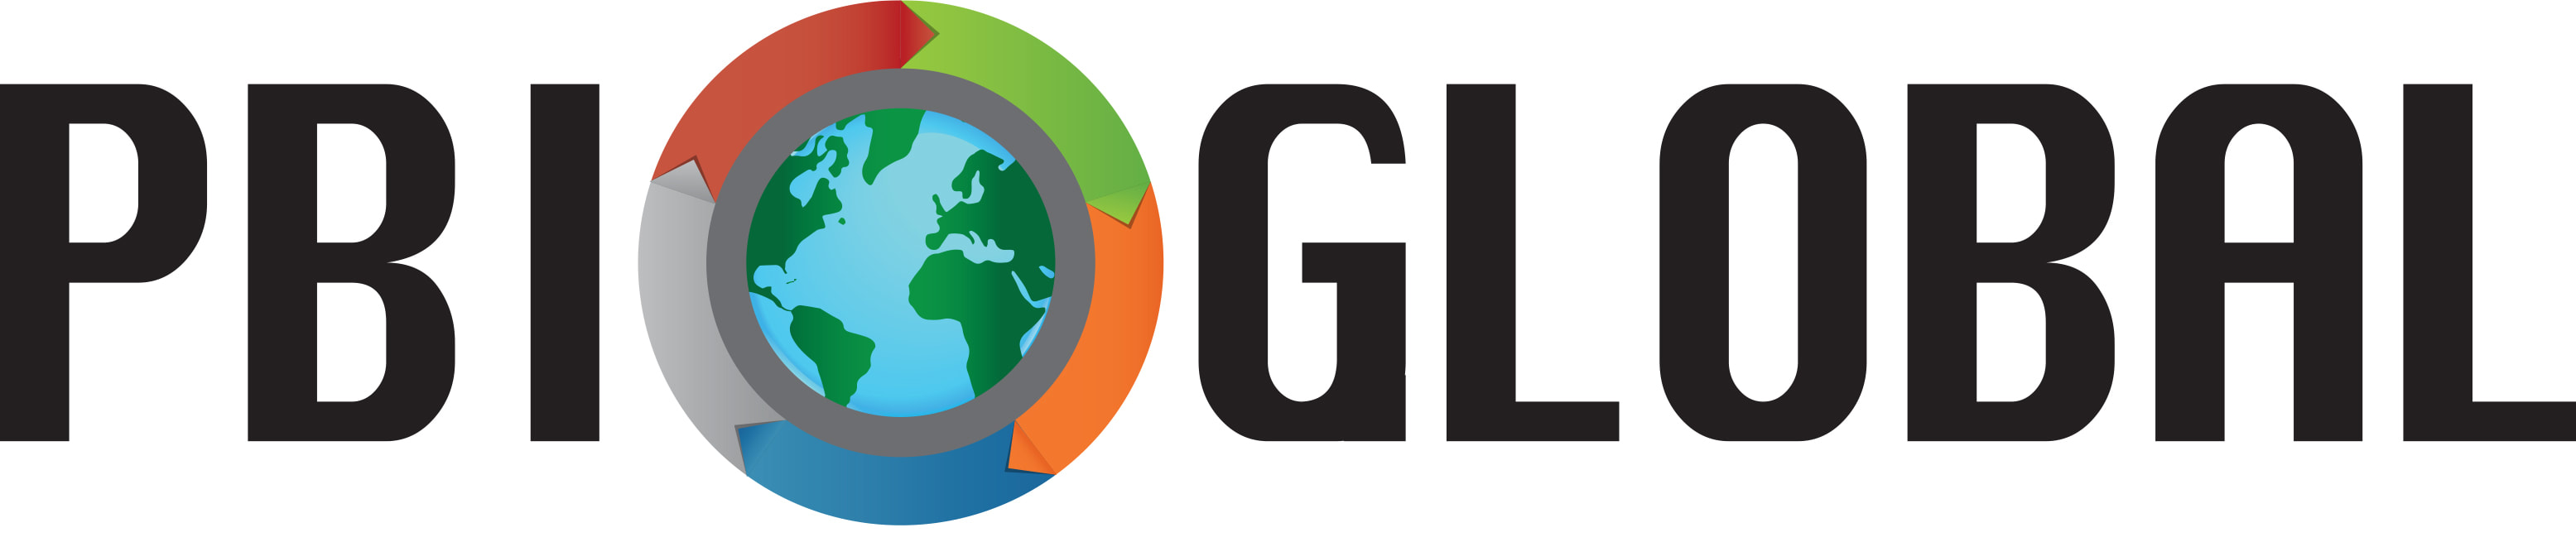 PBI Global Logo